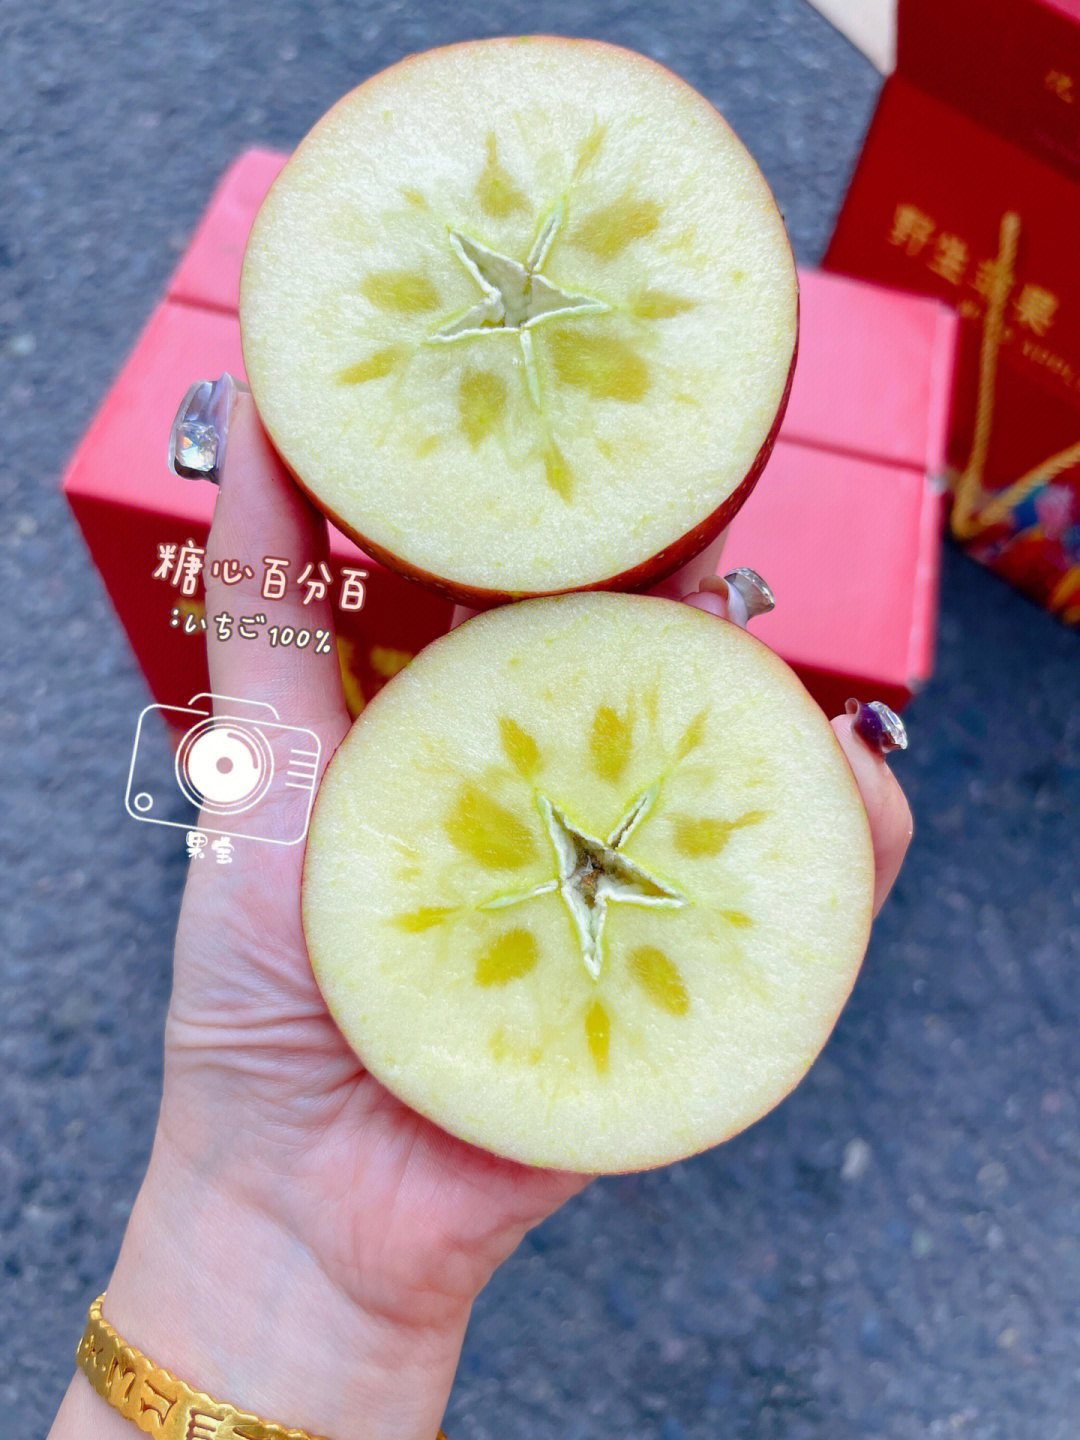 杨华苹果图片